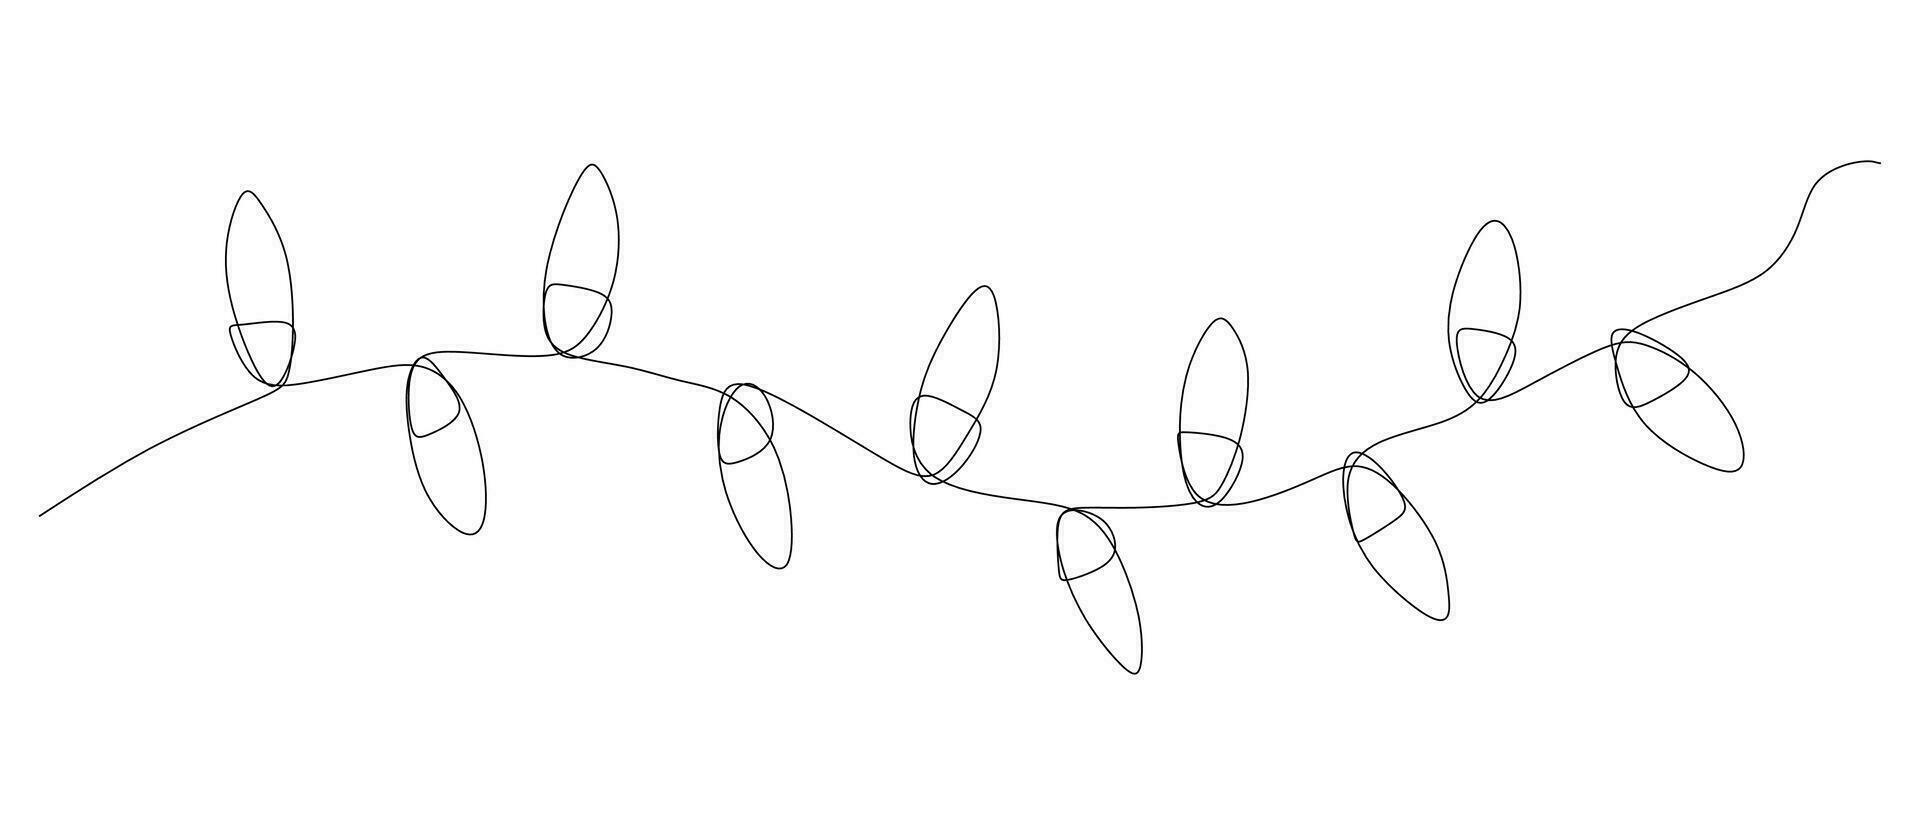 uno continuo línea dibujo de Navidad guirnalda con ligero bombillas festivo festón Navidad cuerda y divisor frontera en sencillo lineal estilo. editable ataque. garabatear vector ilustración